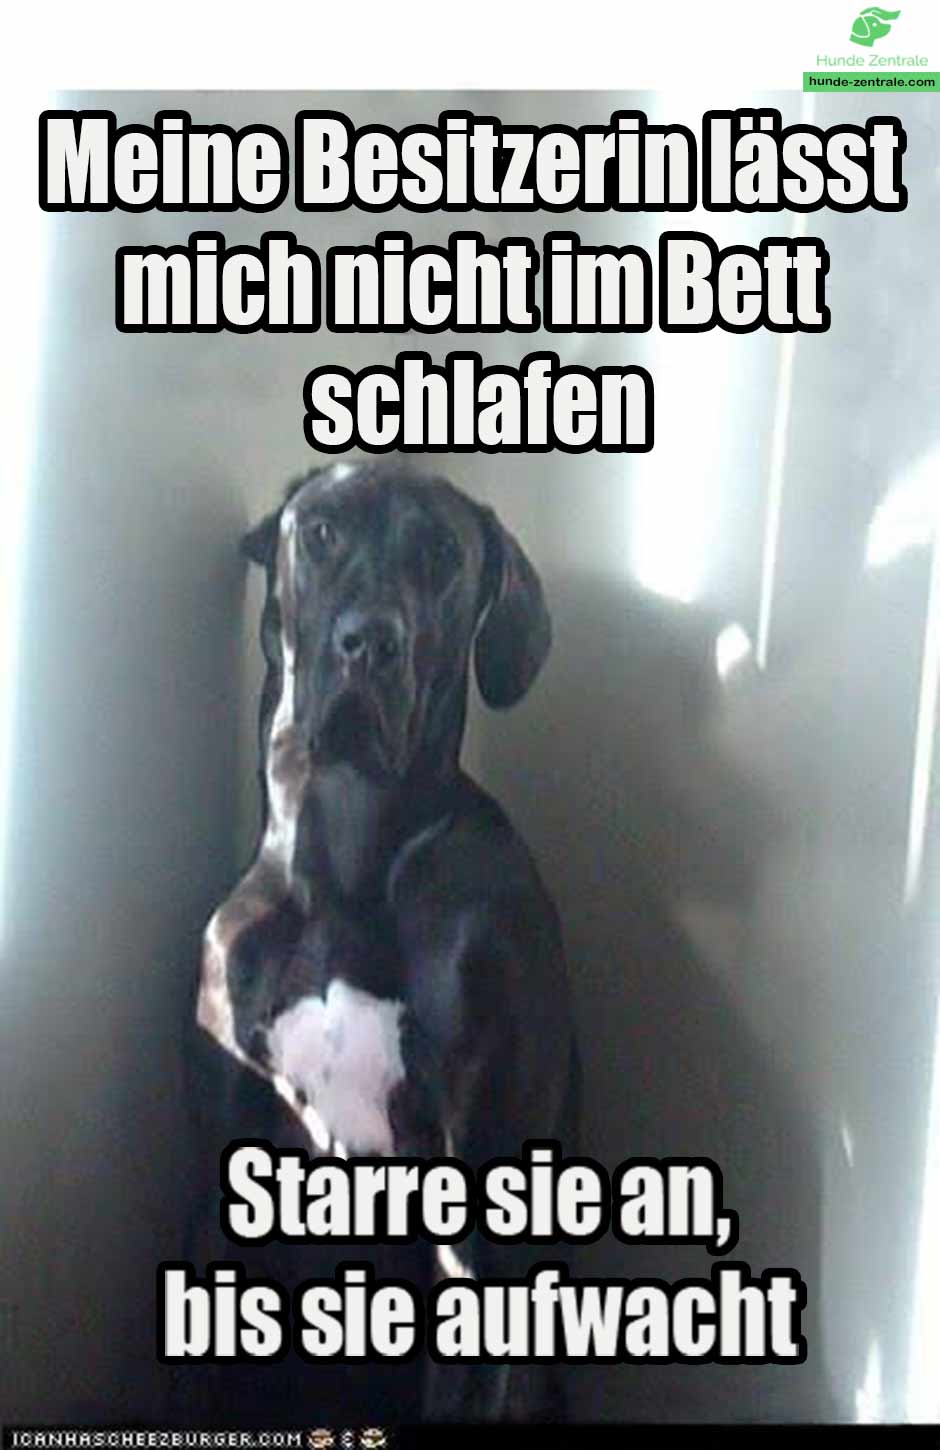 Deutsche-Dogge-Meme-der-besitzer-laesst-mich-nicht-im-bett-schlafen